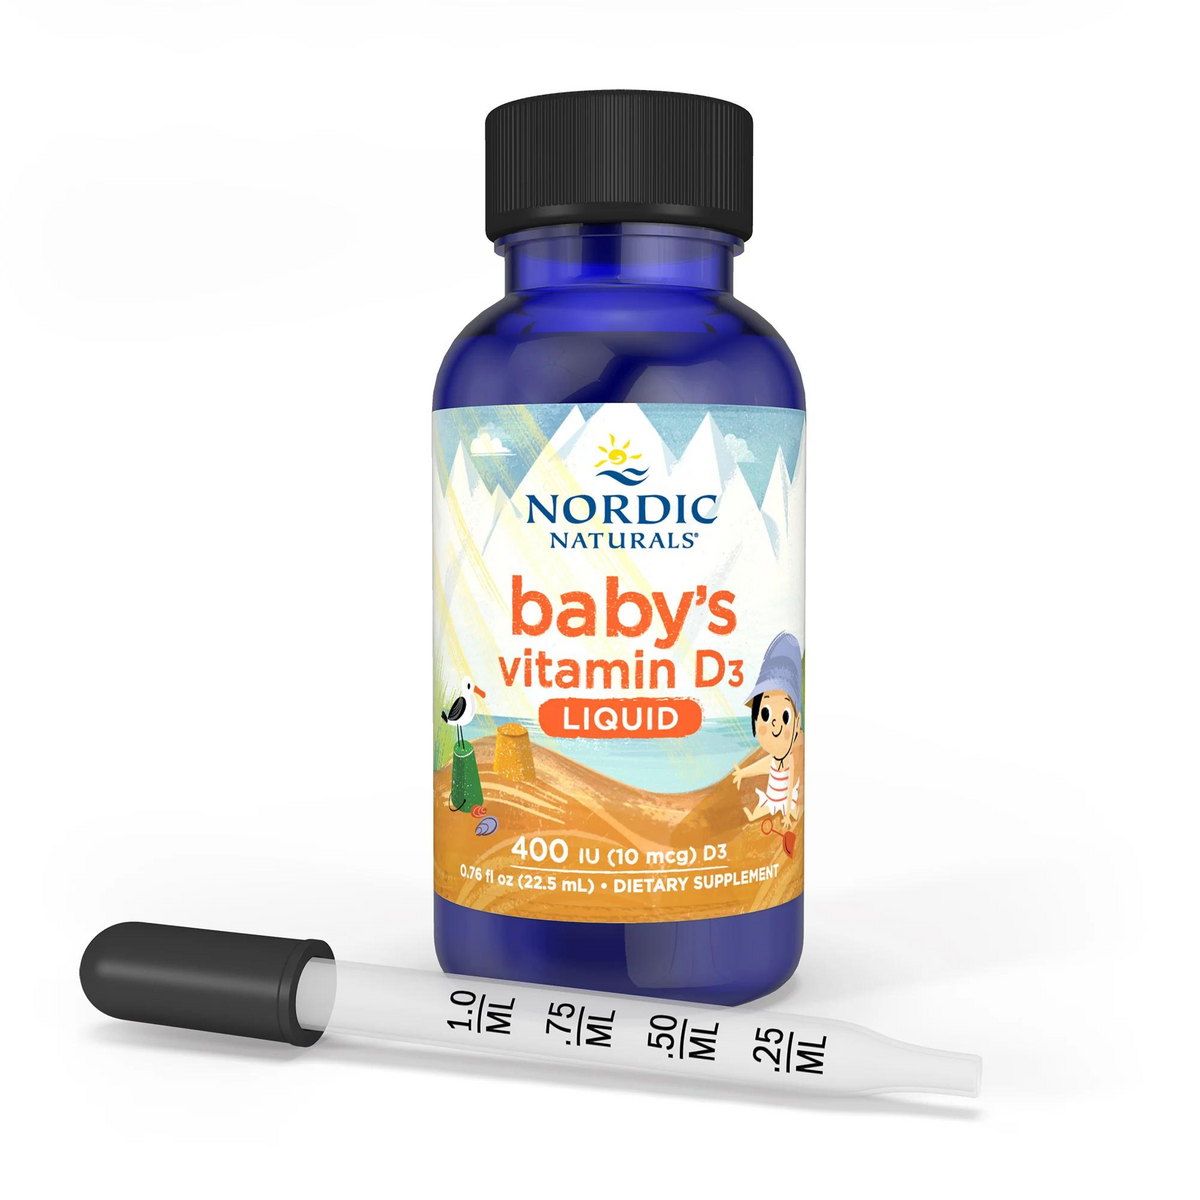 Alternate Image of Baby's Vitamin D3 Liquid